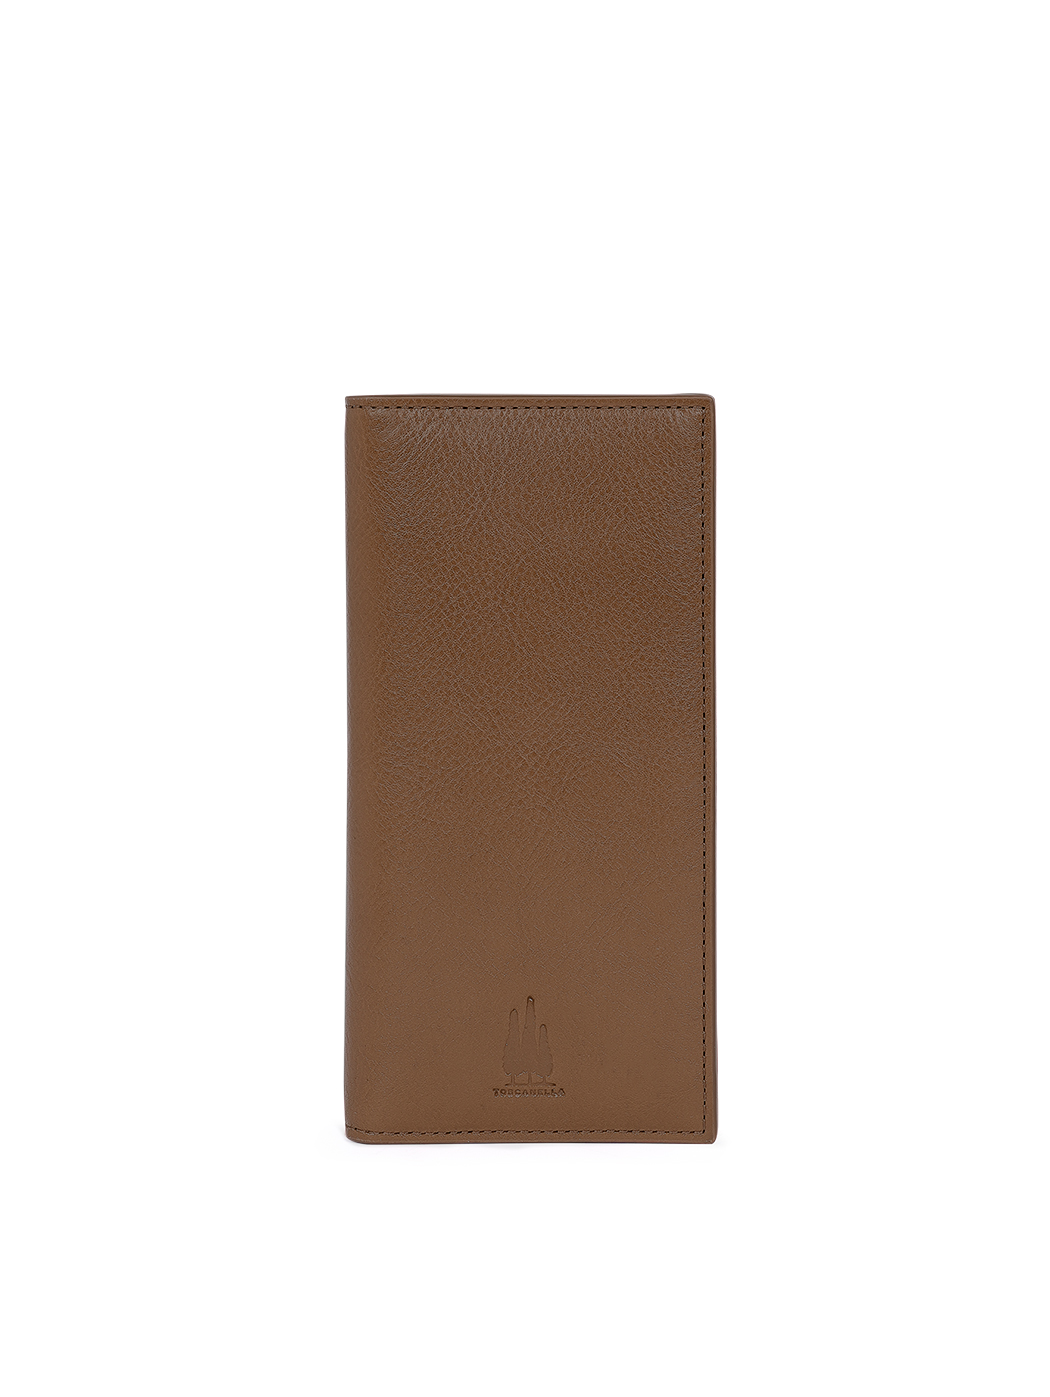 Стильный кожаный бумажник темно-коричневый